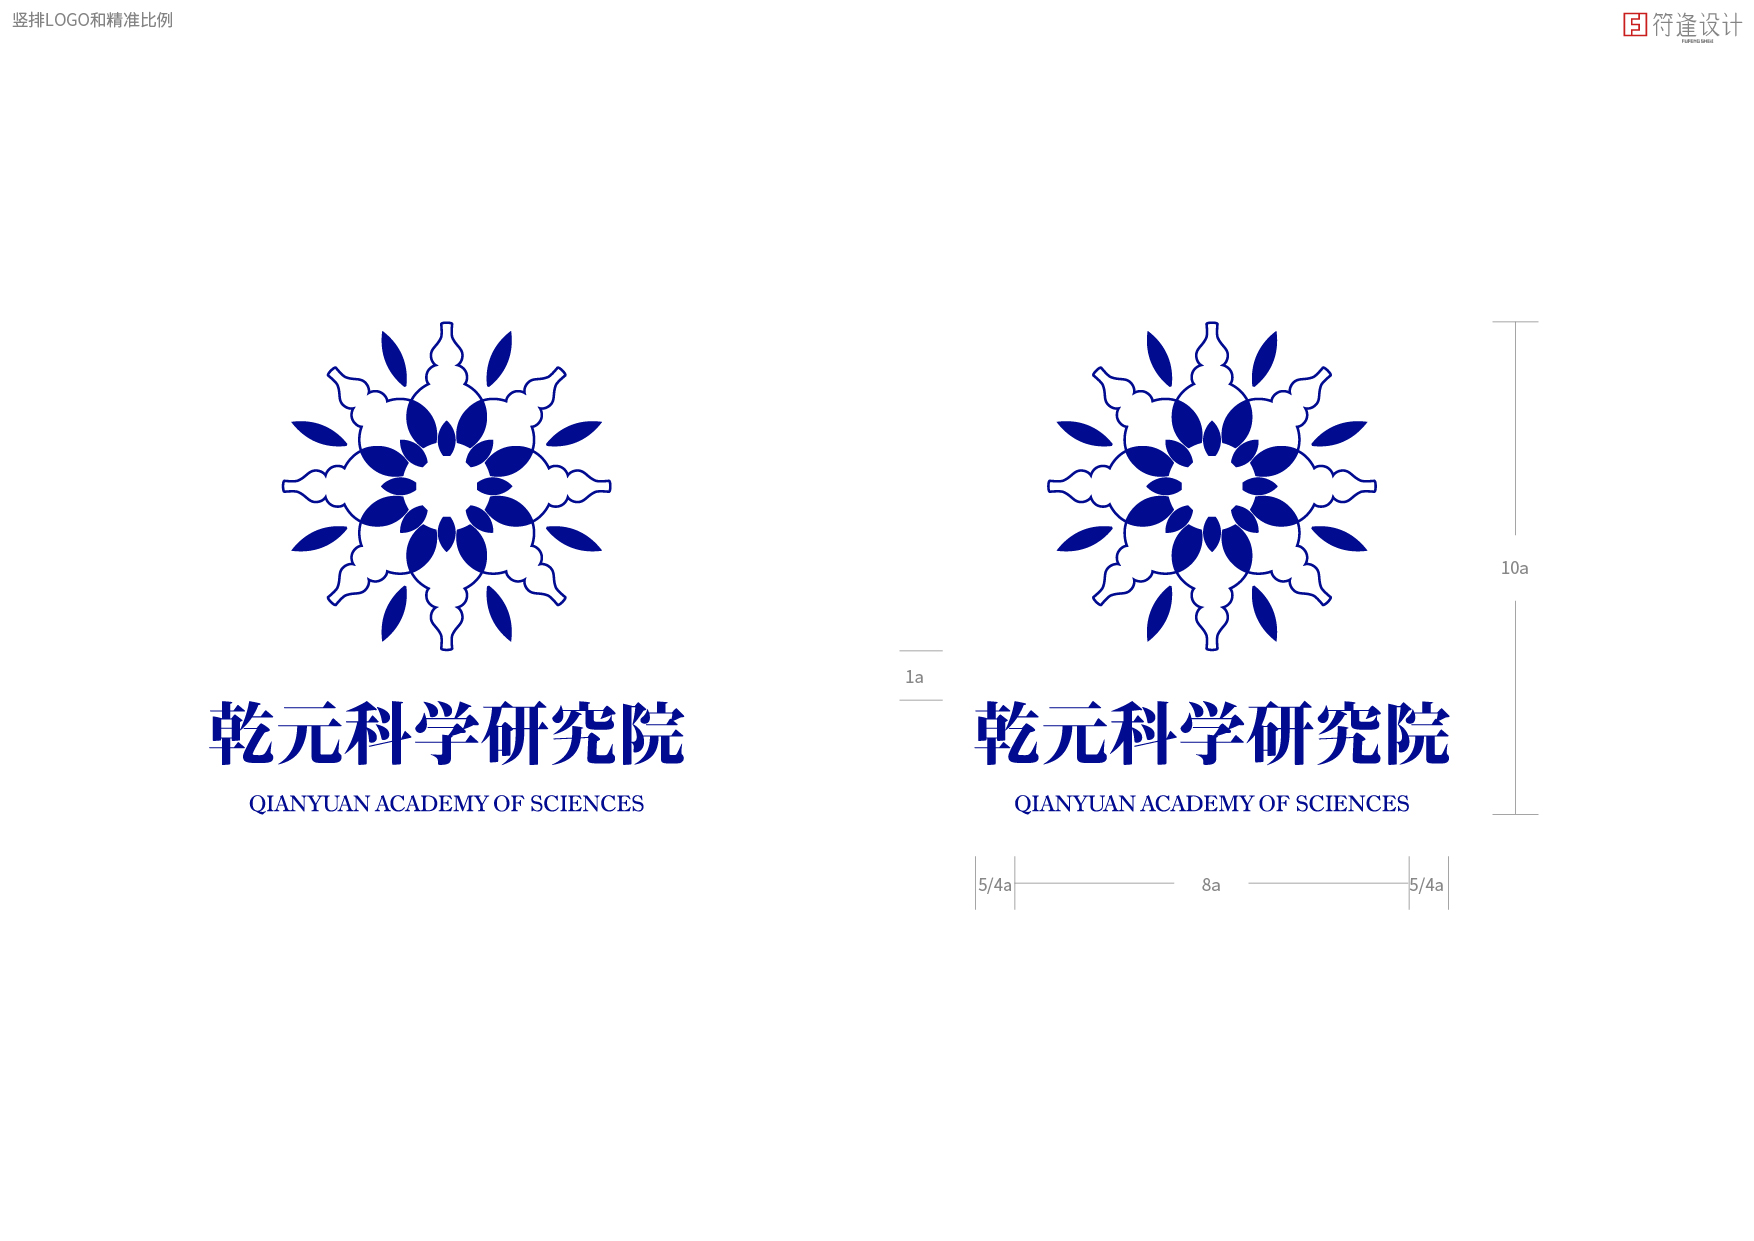 乾元科学研究院标志(Logo)